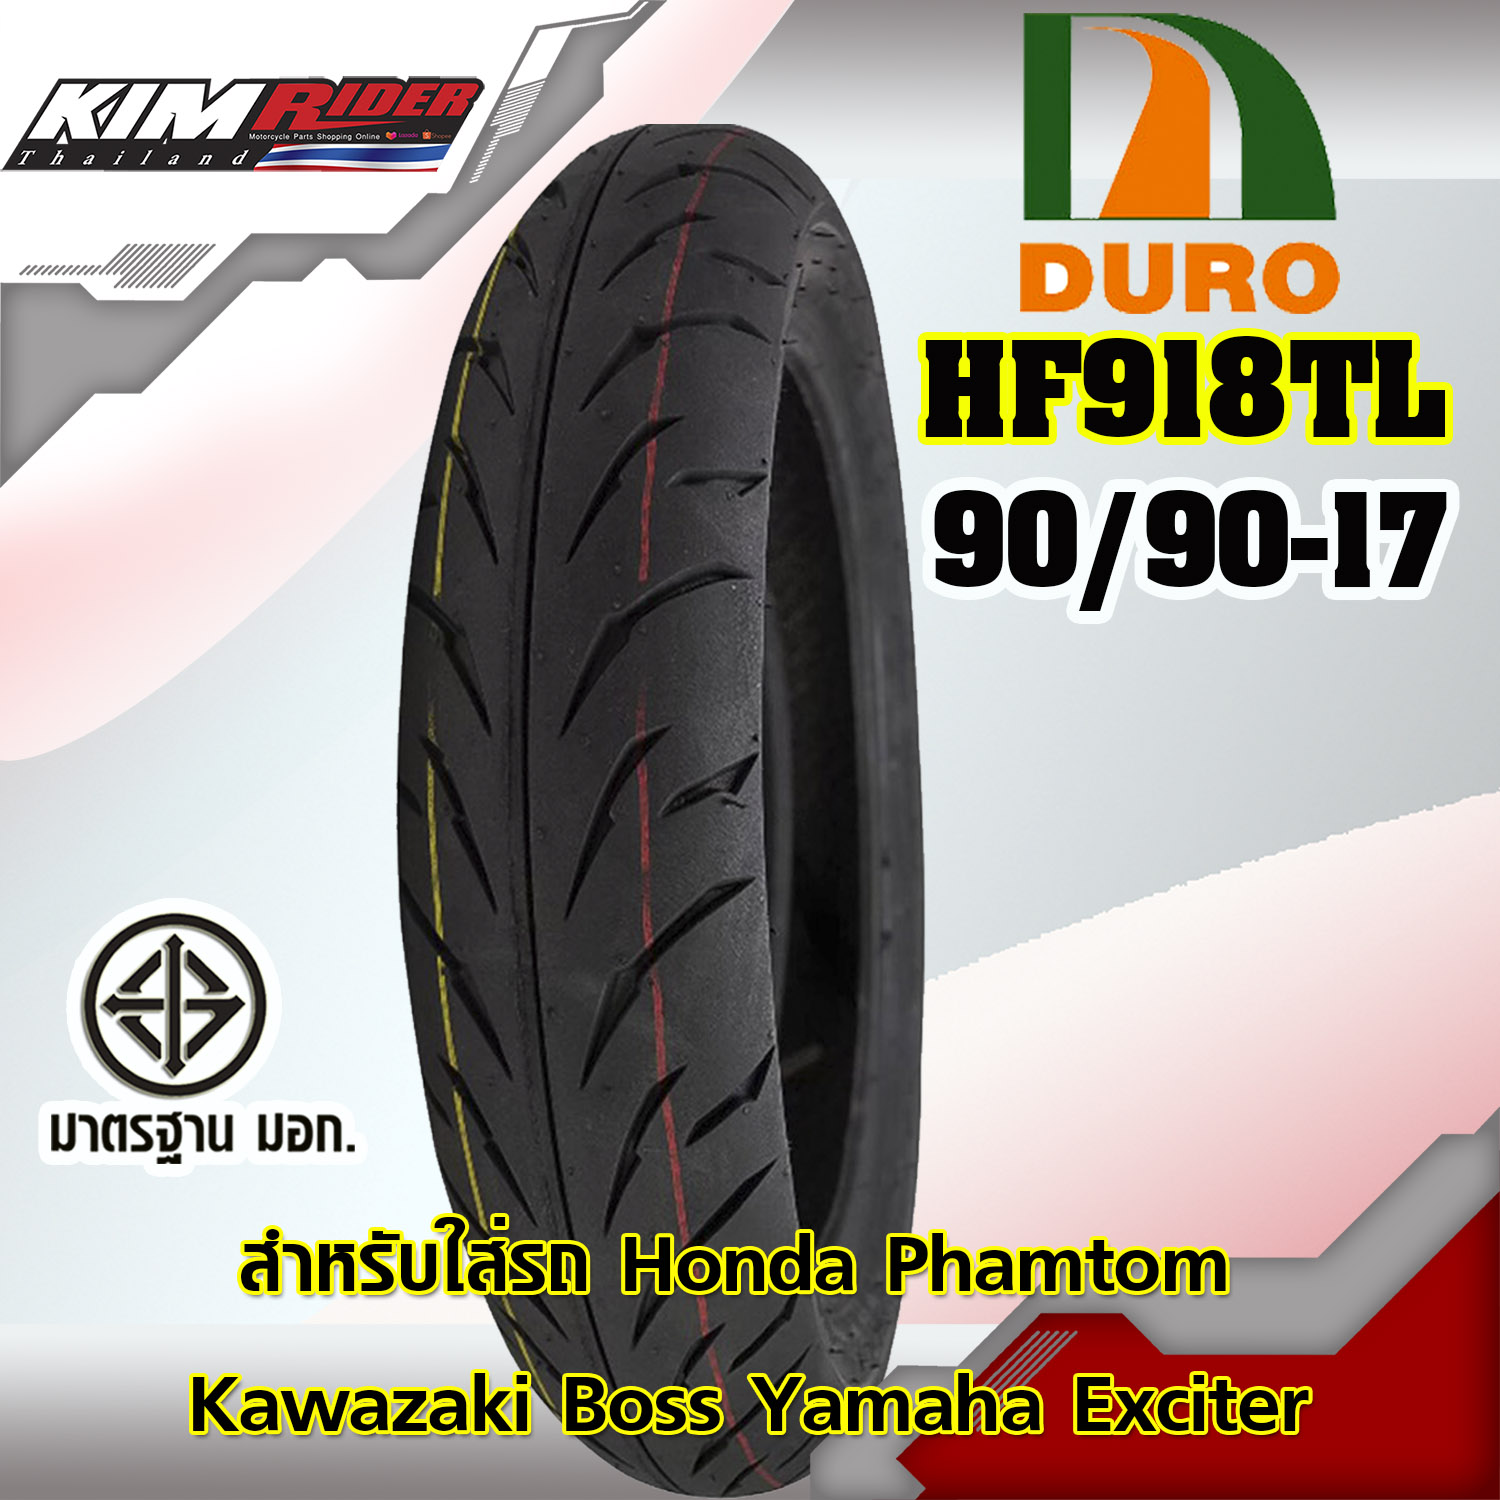 ยางมอเตอร์ไซค์ ยางขอบ17  ขนาดล้อหน้า รุ่น HR-918 ขนาด 90/90/17 สำหรับใส่รถ honda phamtom kawazaki boss yamaha Exciter